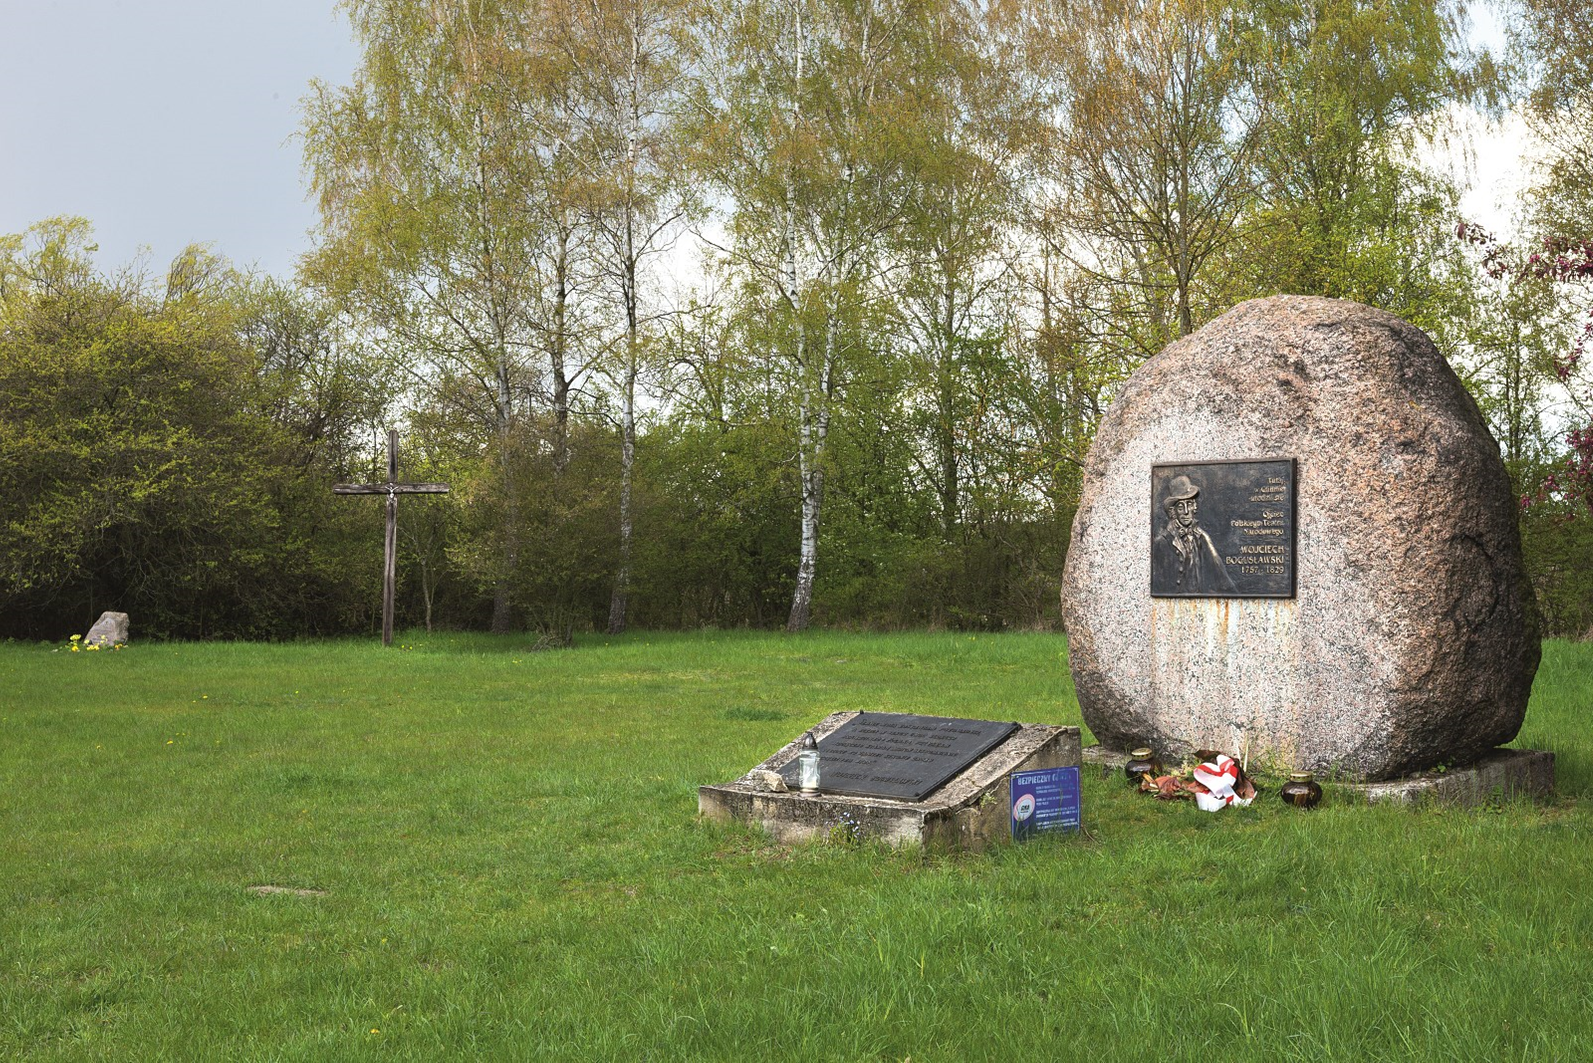 Zdjęcie przedstawia pomnik przyrody nieożywionej, głaz narzutowy zlokalizowany w miejscu urodzenia Wojciecha Bogusławskiego. Fot. Karolina Prange